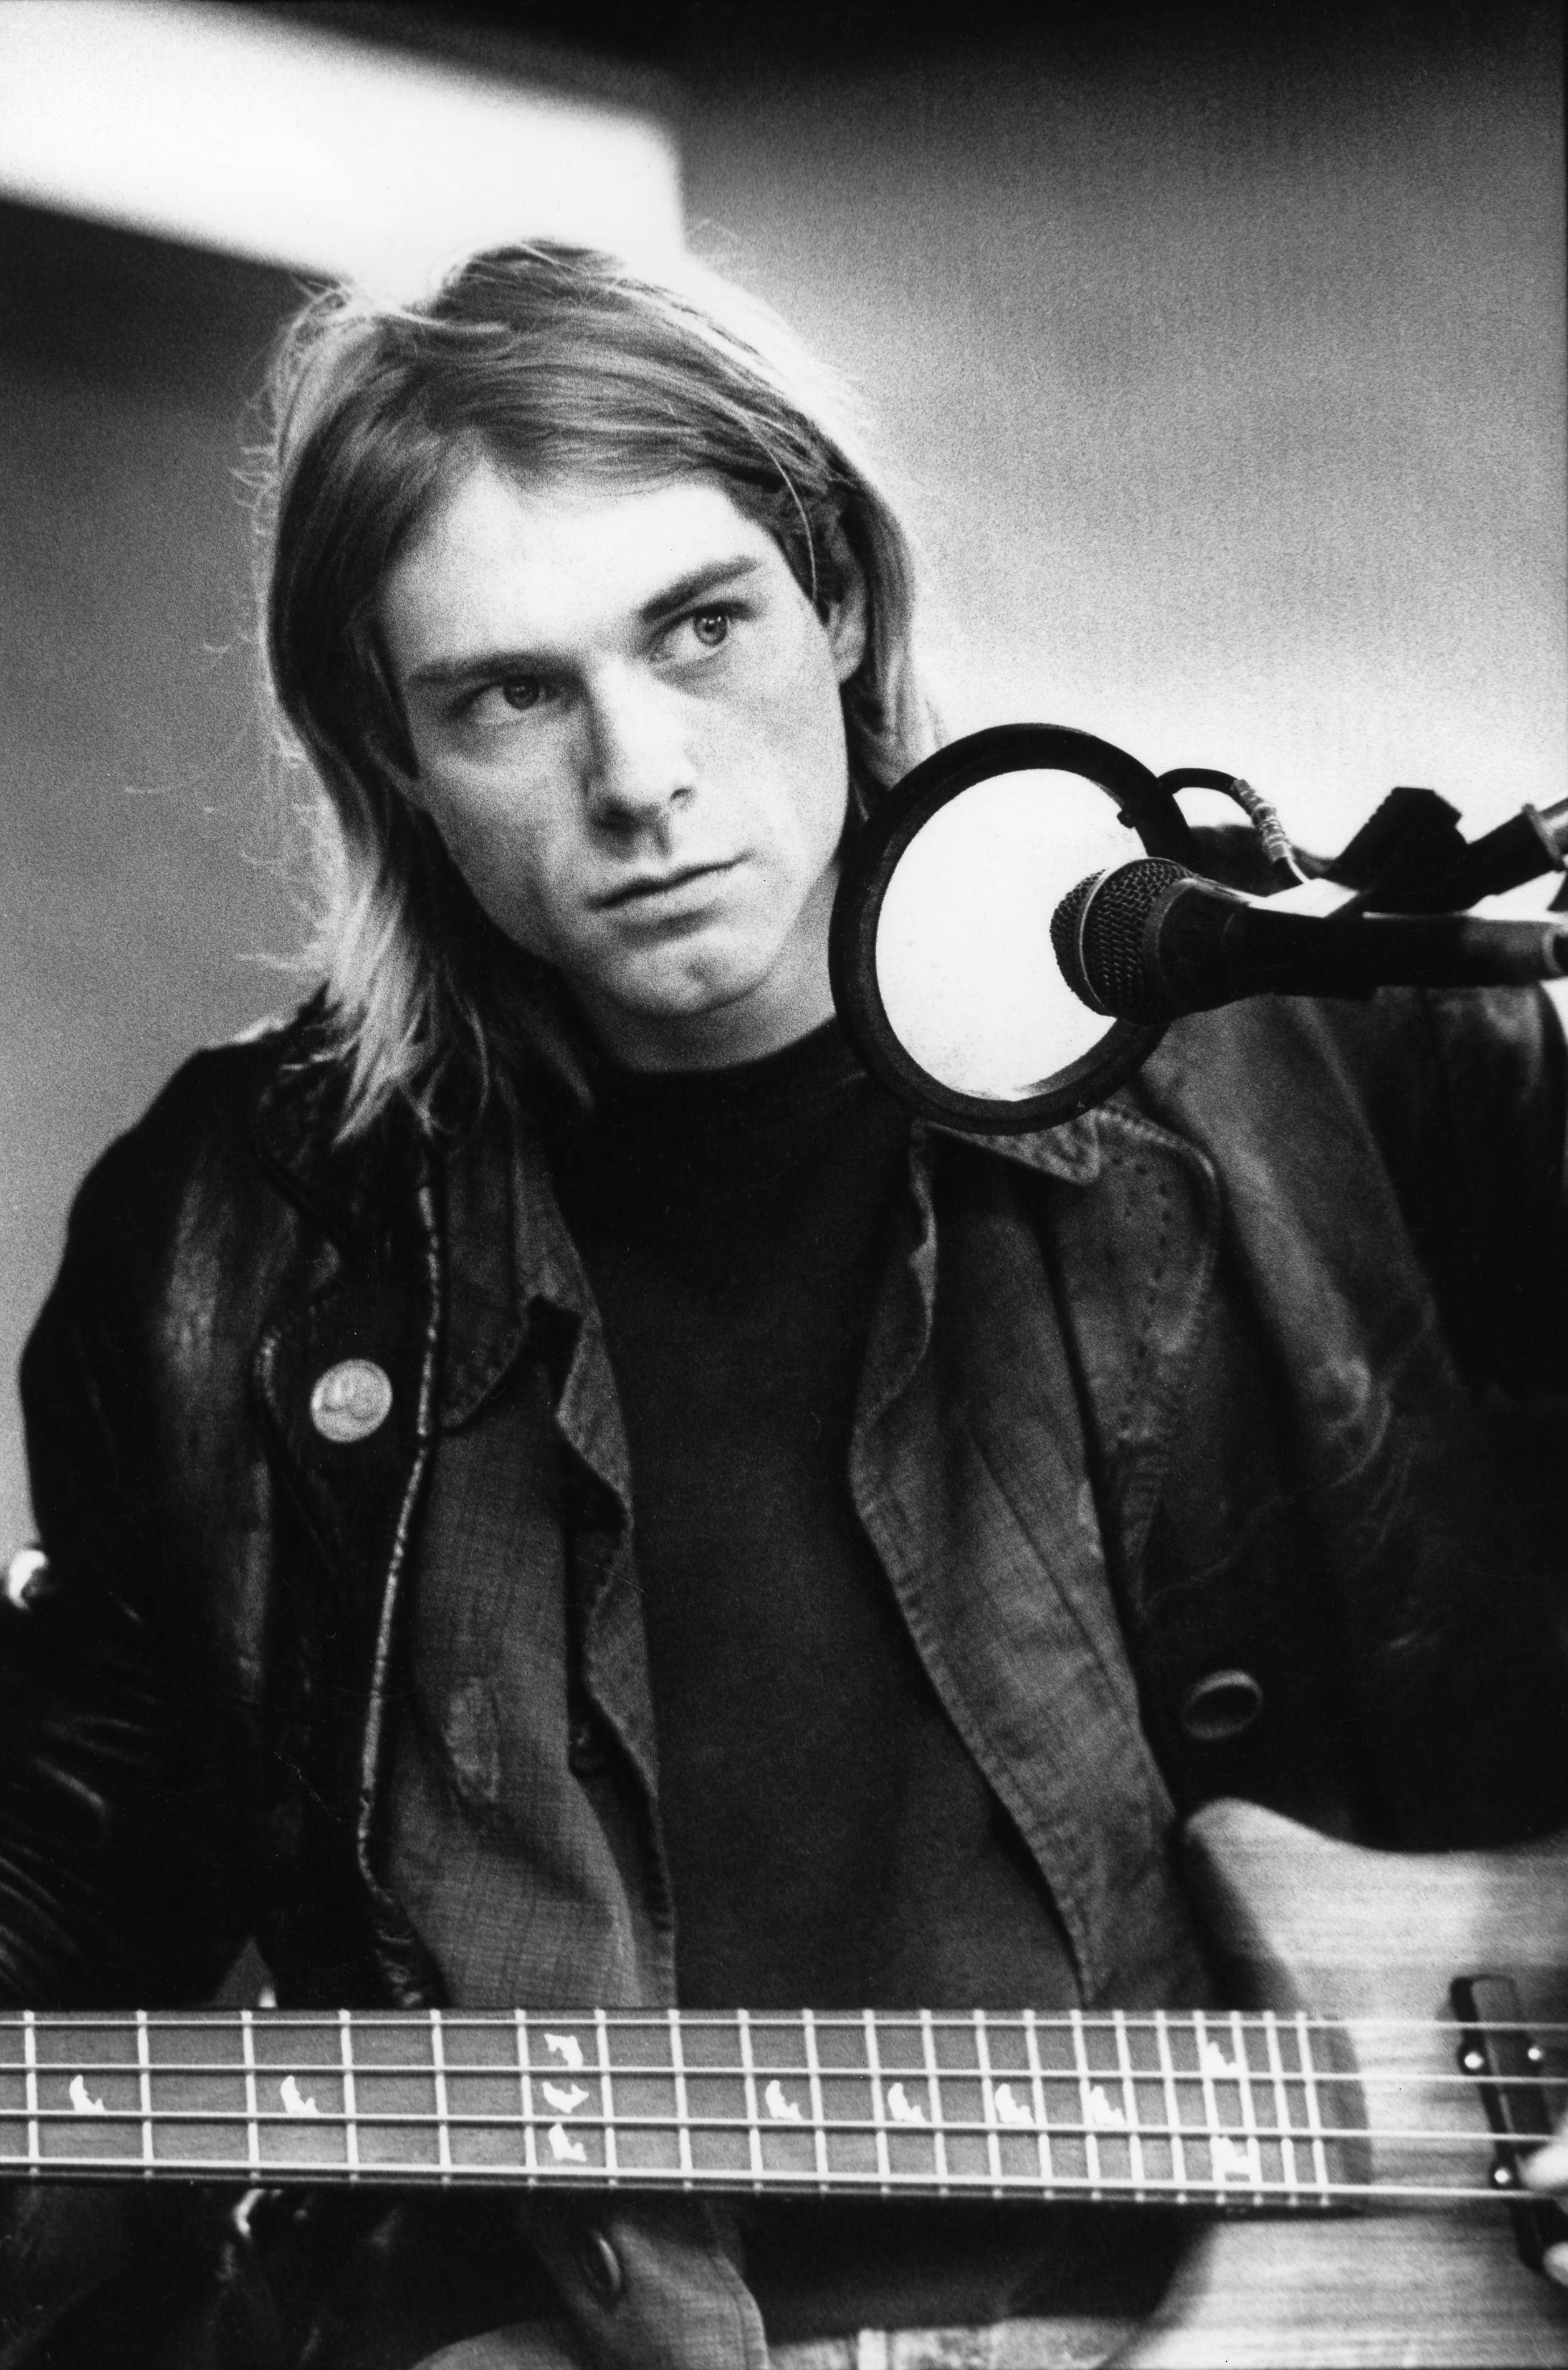 Kurt Cobain aux Hilversum Studios. Photo par Michel Linssen/Redferns via Getty Images.